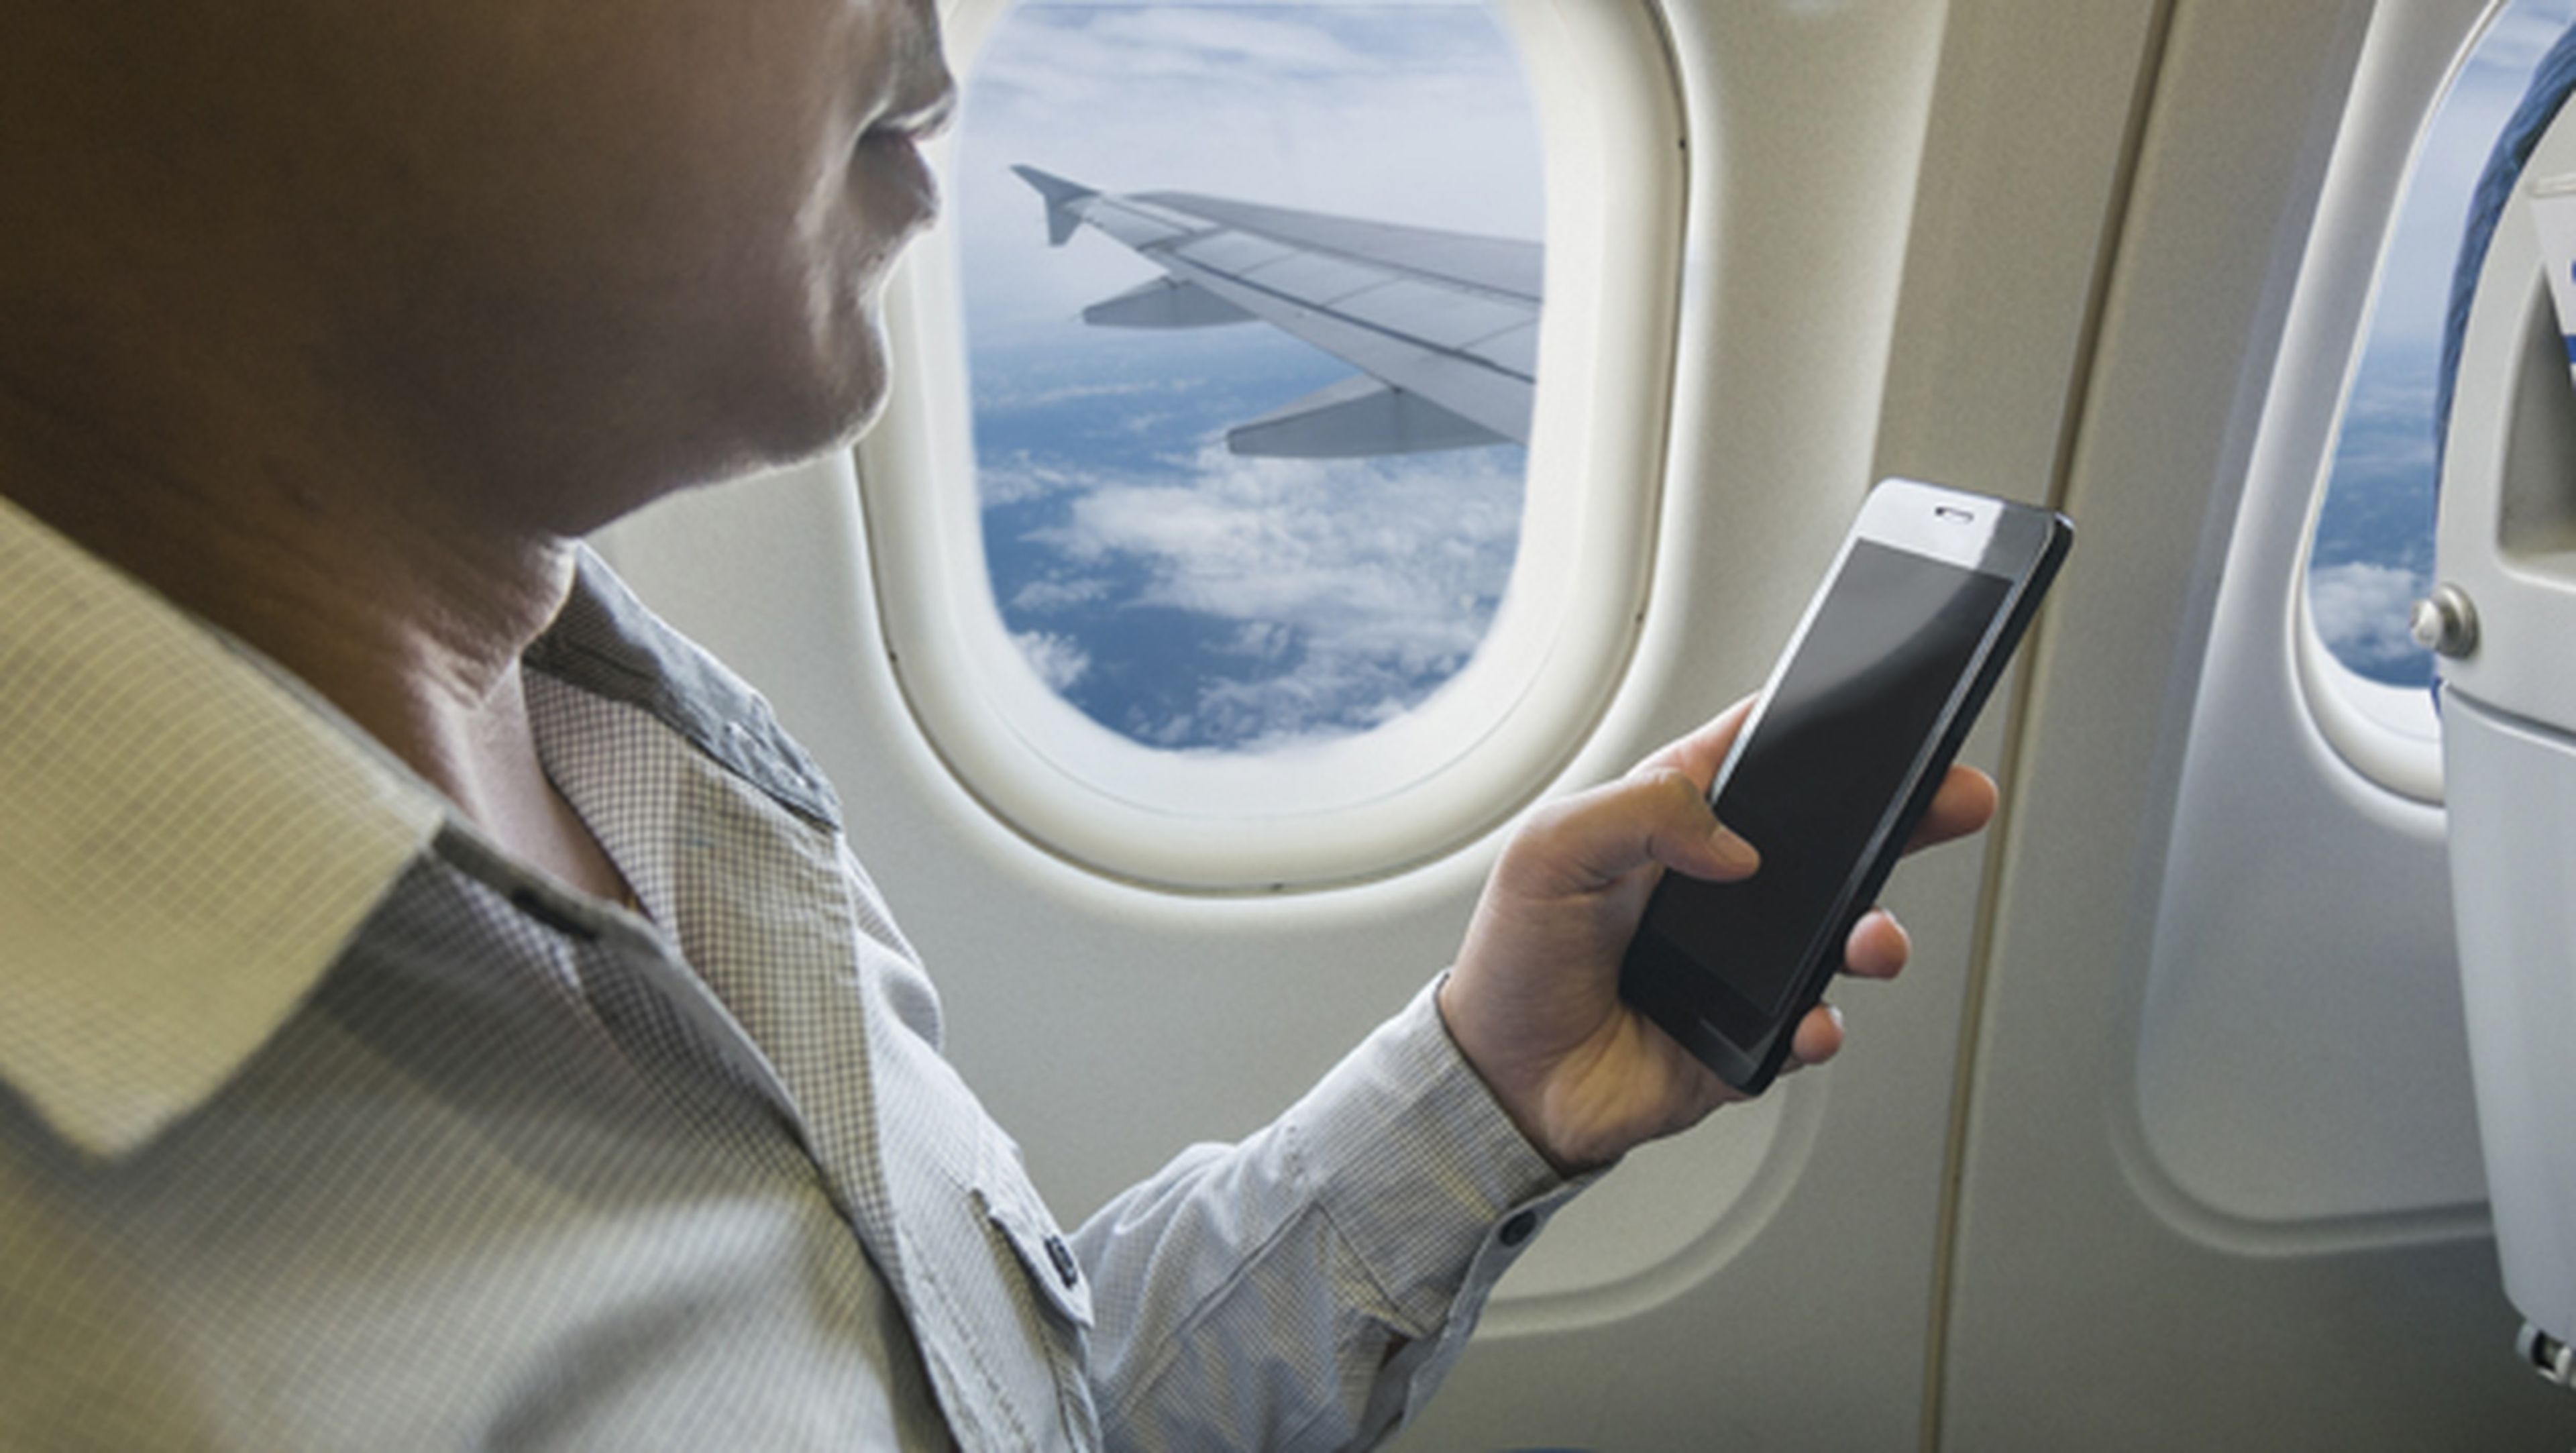 Pasajeros de vuelos europeos tendrán banda ancha en el avión